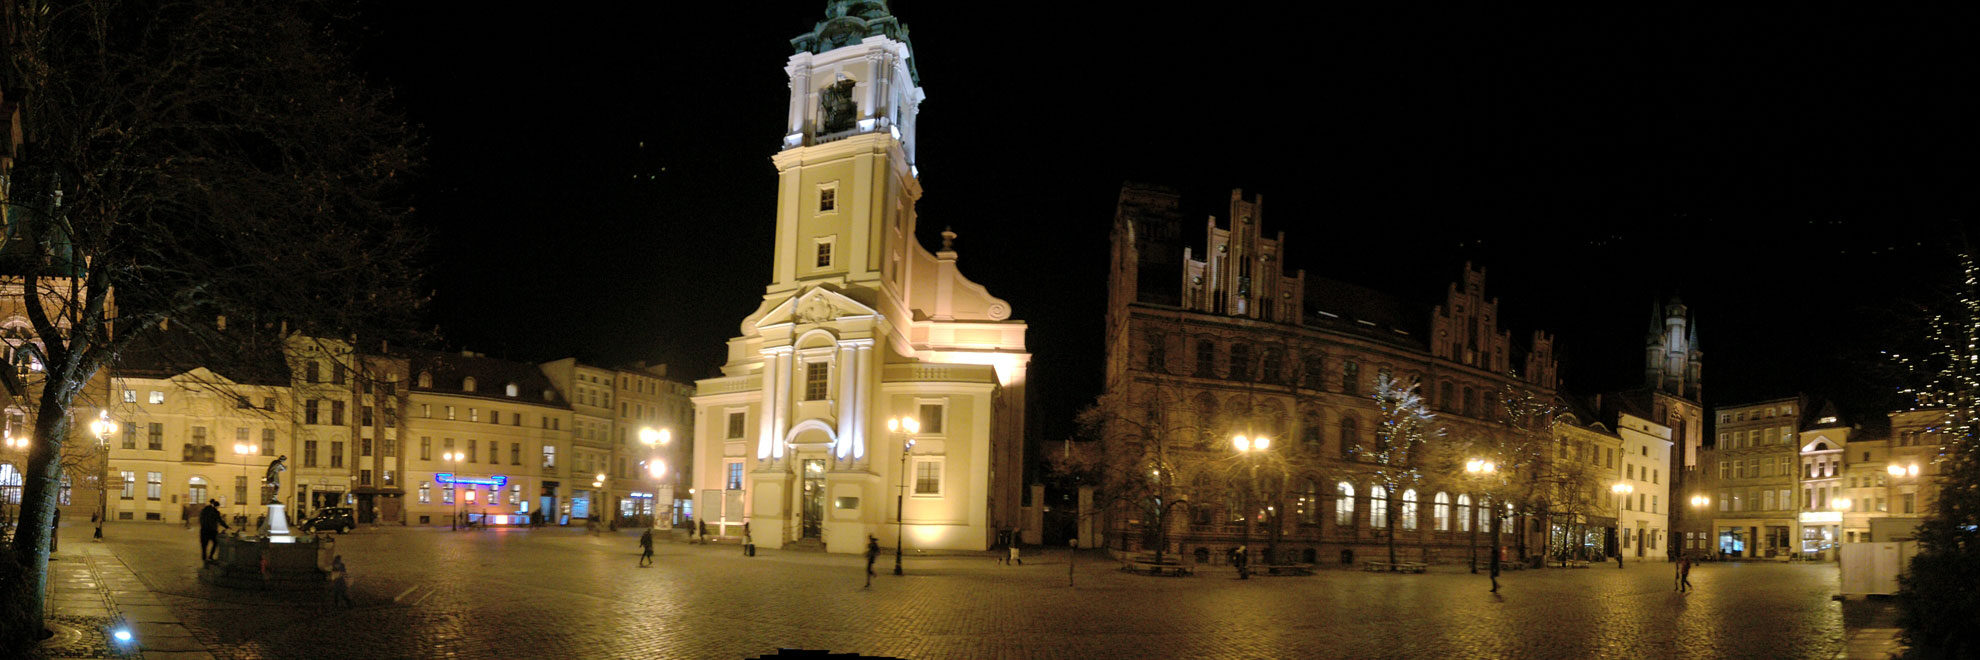 Toruń <br>Thorn bei Nacht